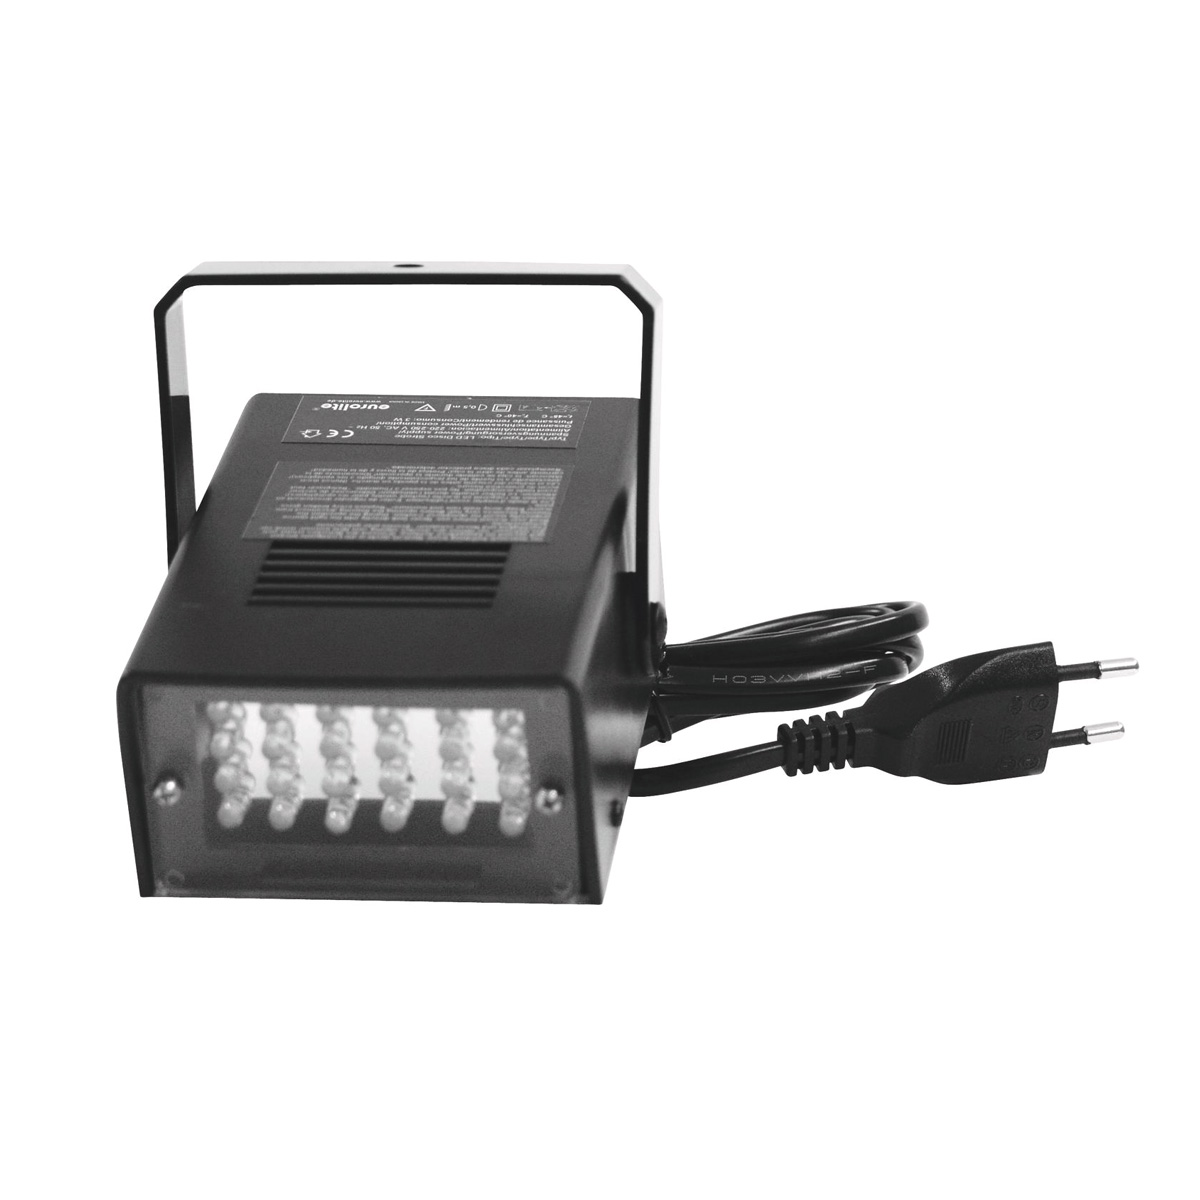 LED Disco Strobe weiß - Stroboskop mit Musiksteuerung und  Geschwindigkeitsregelung